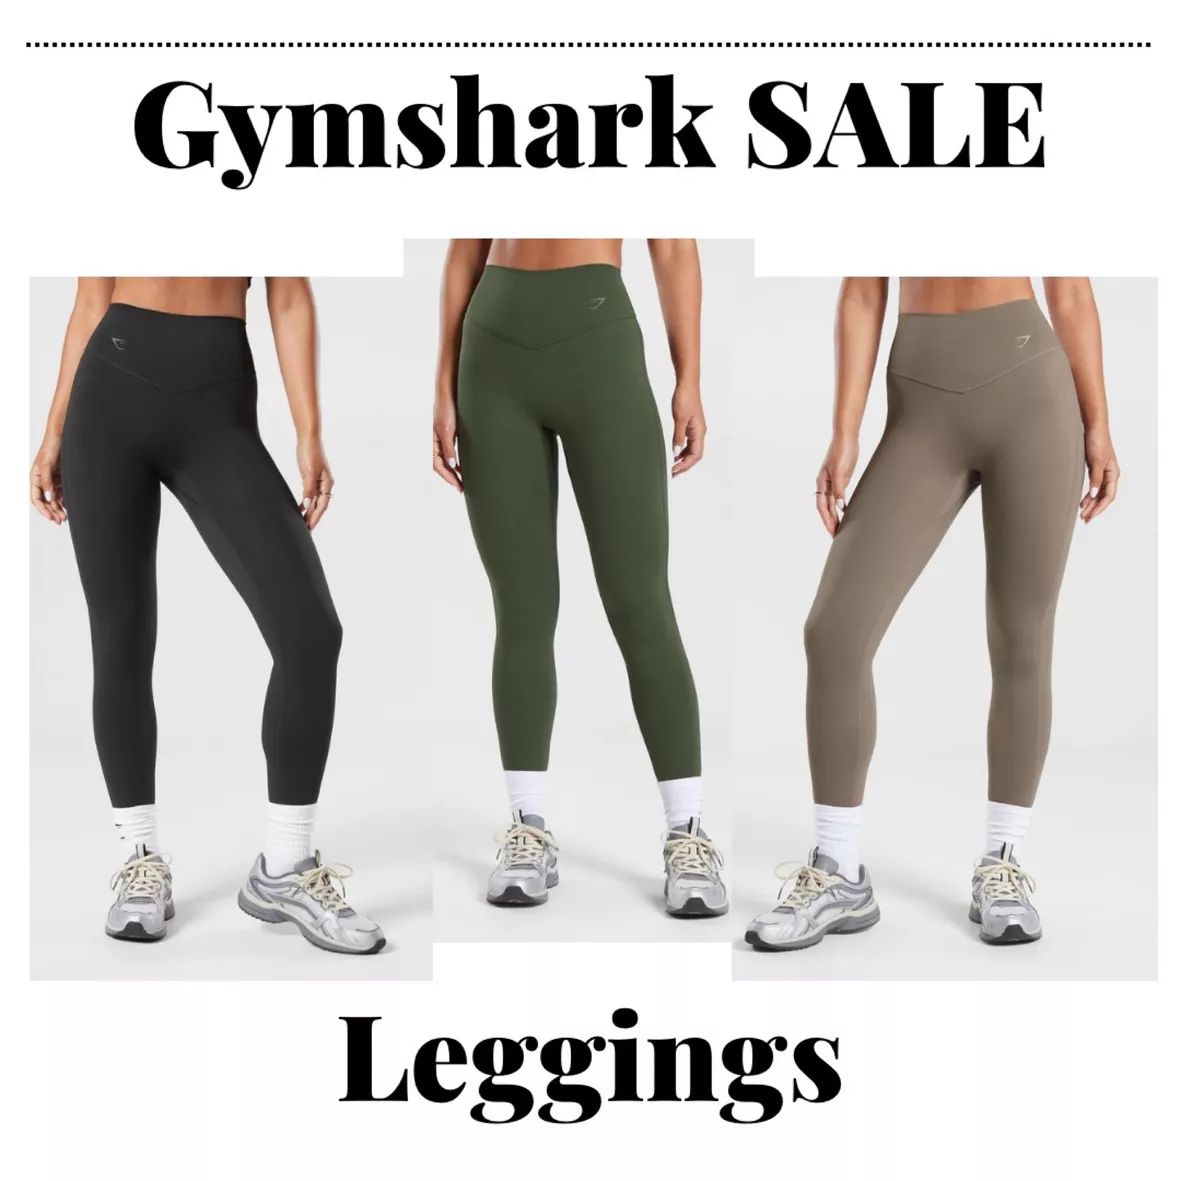 Gymshark Waist Support Leggings - Black